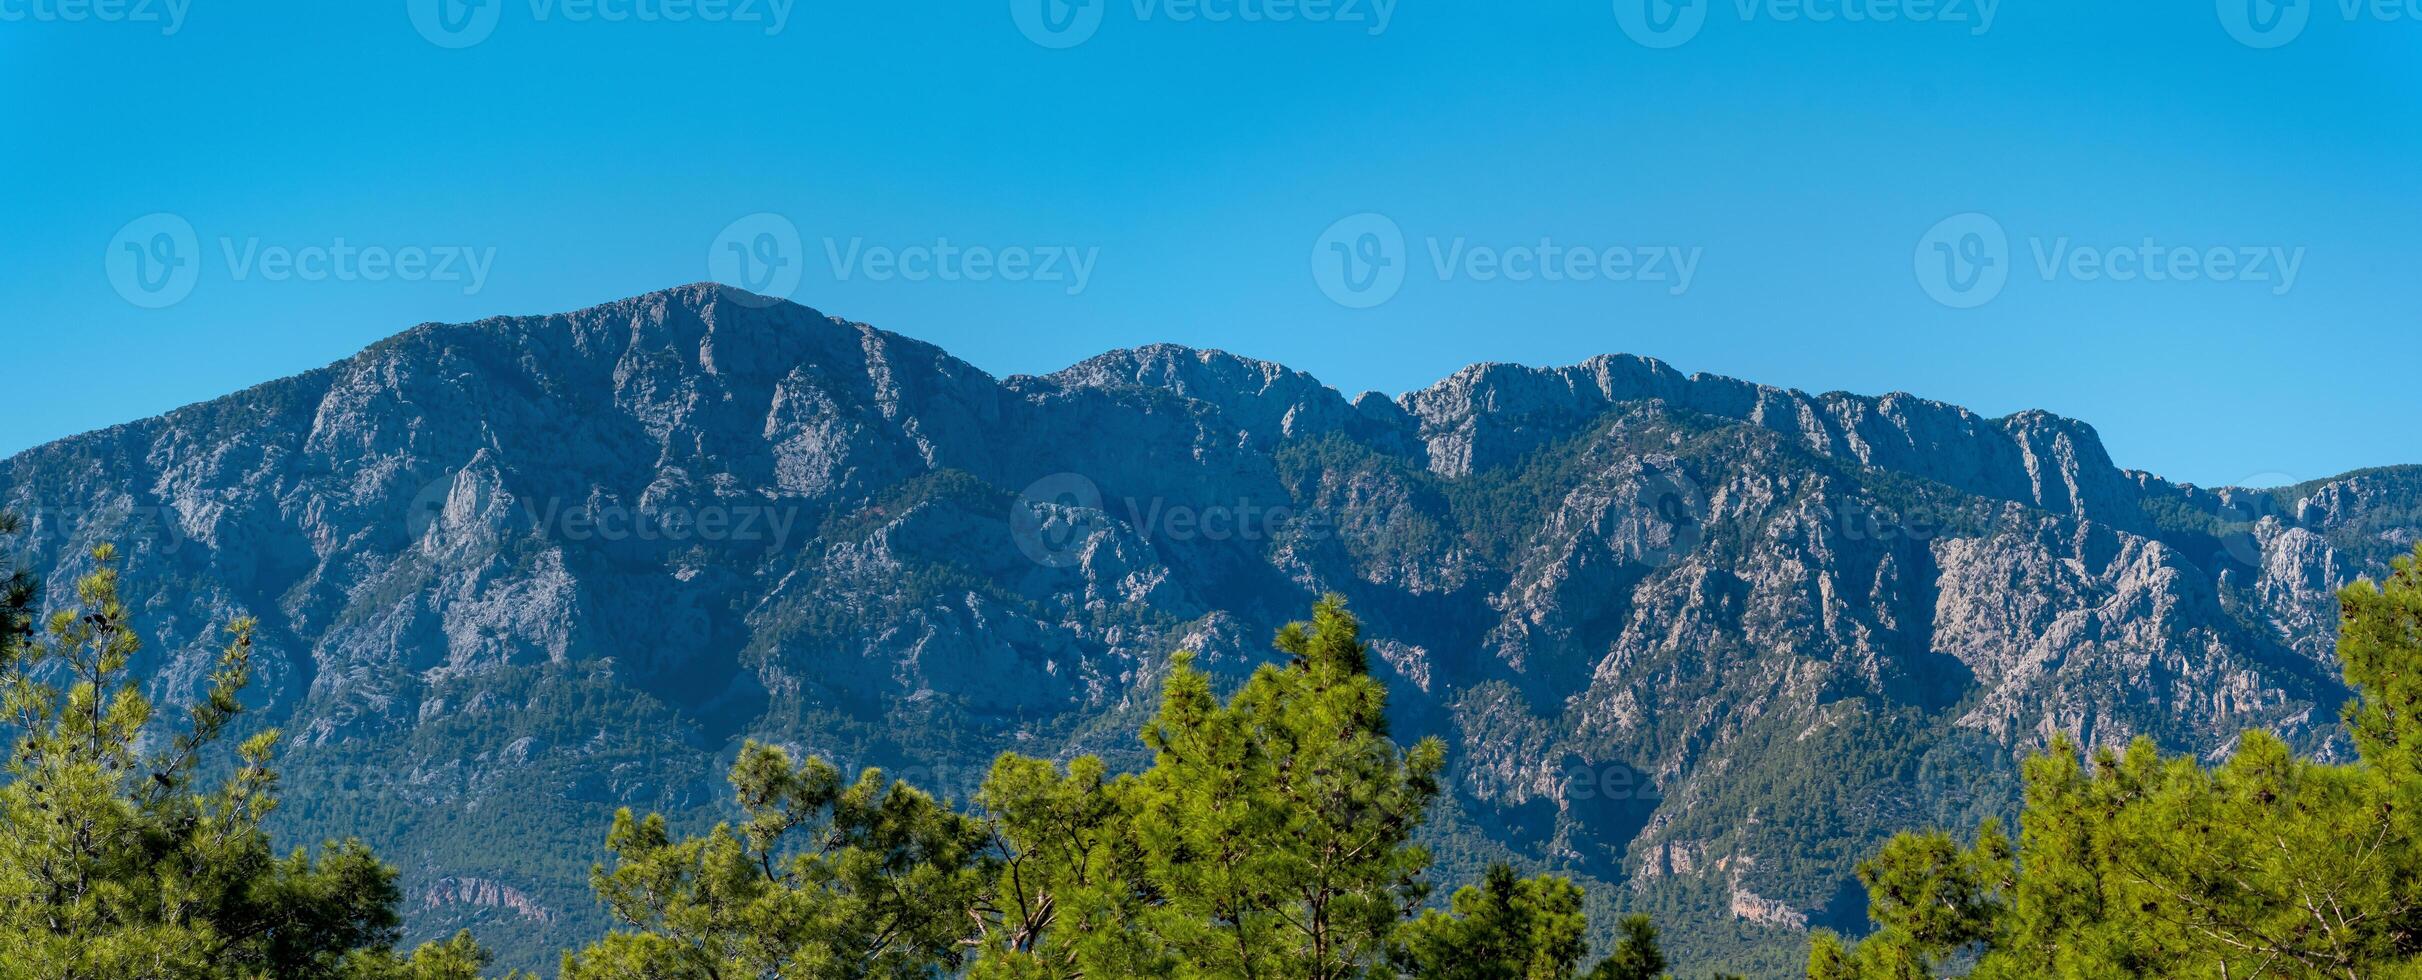 entfernt Berge hinter das Spitzen von Kiefer Bäume - - Landschaft, Panorama foto